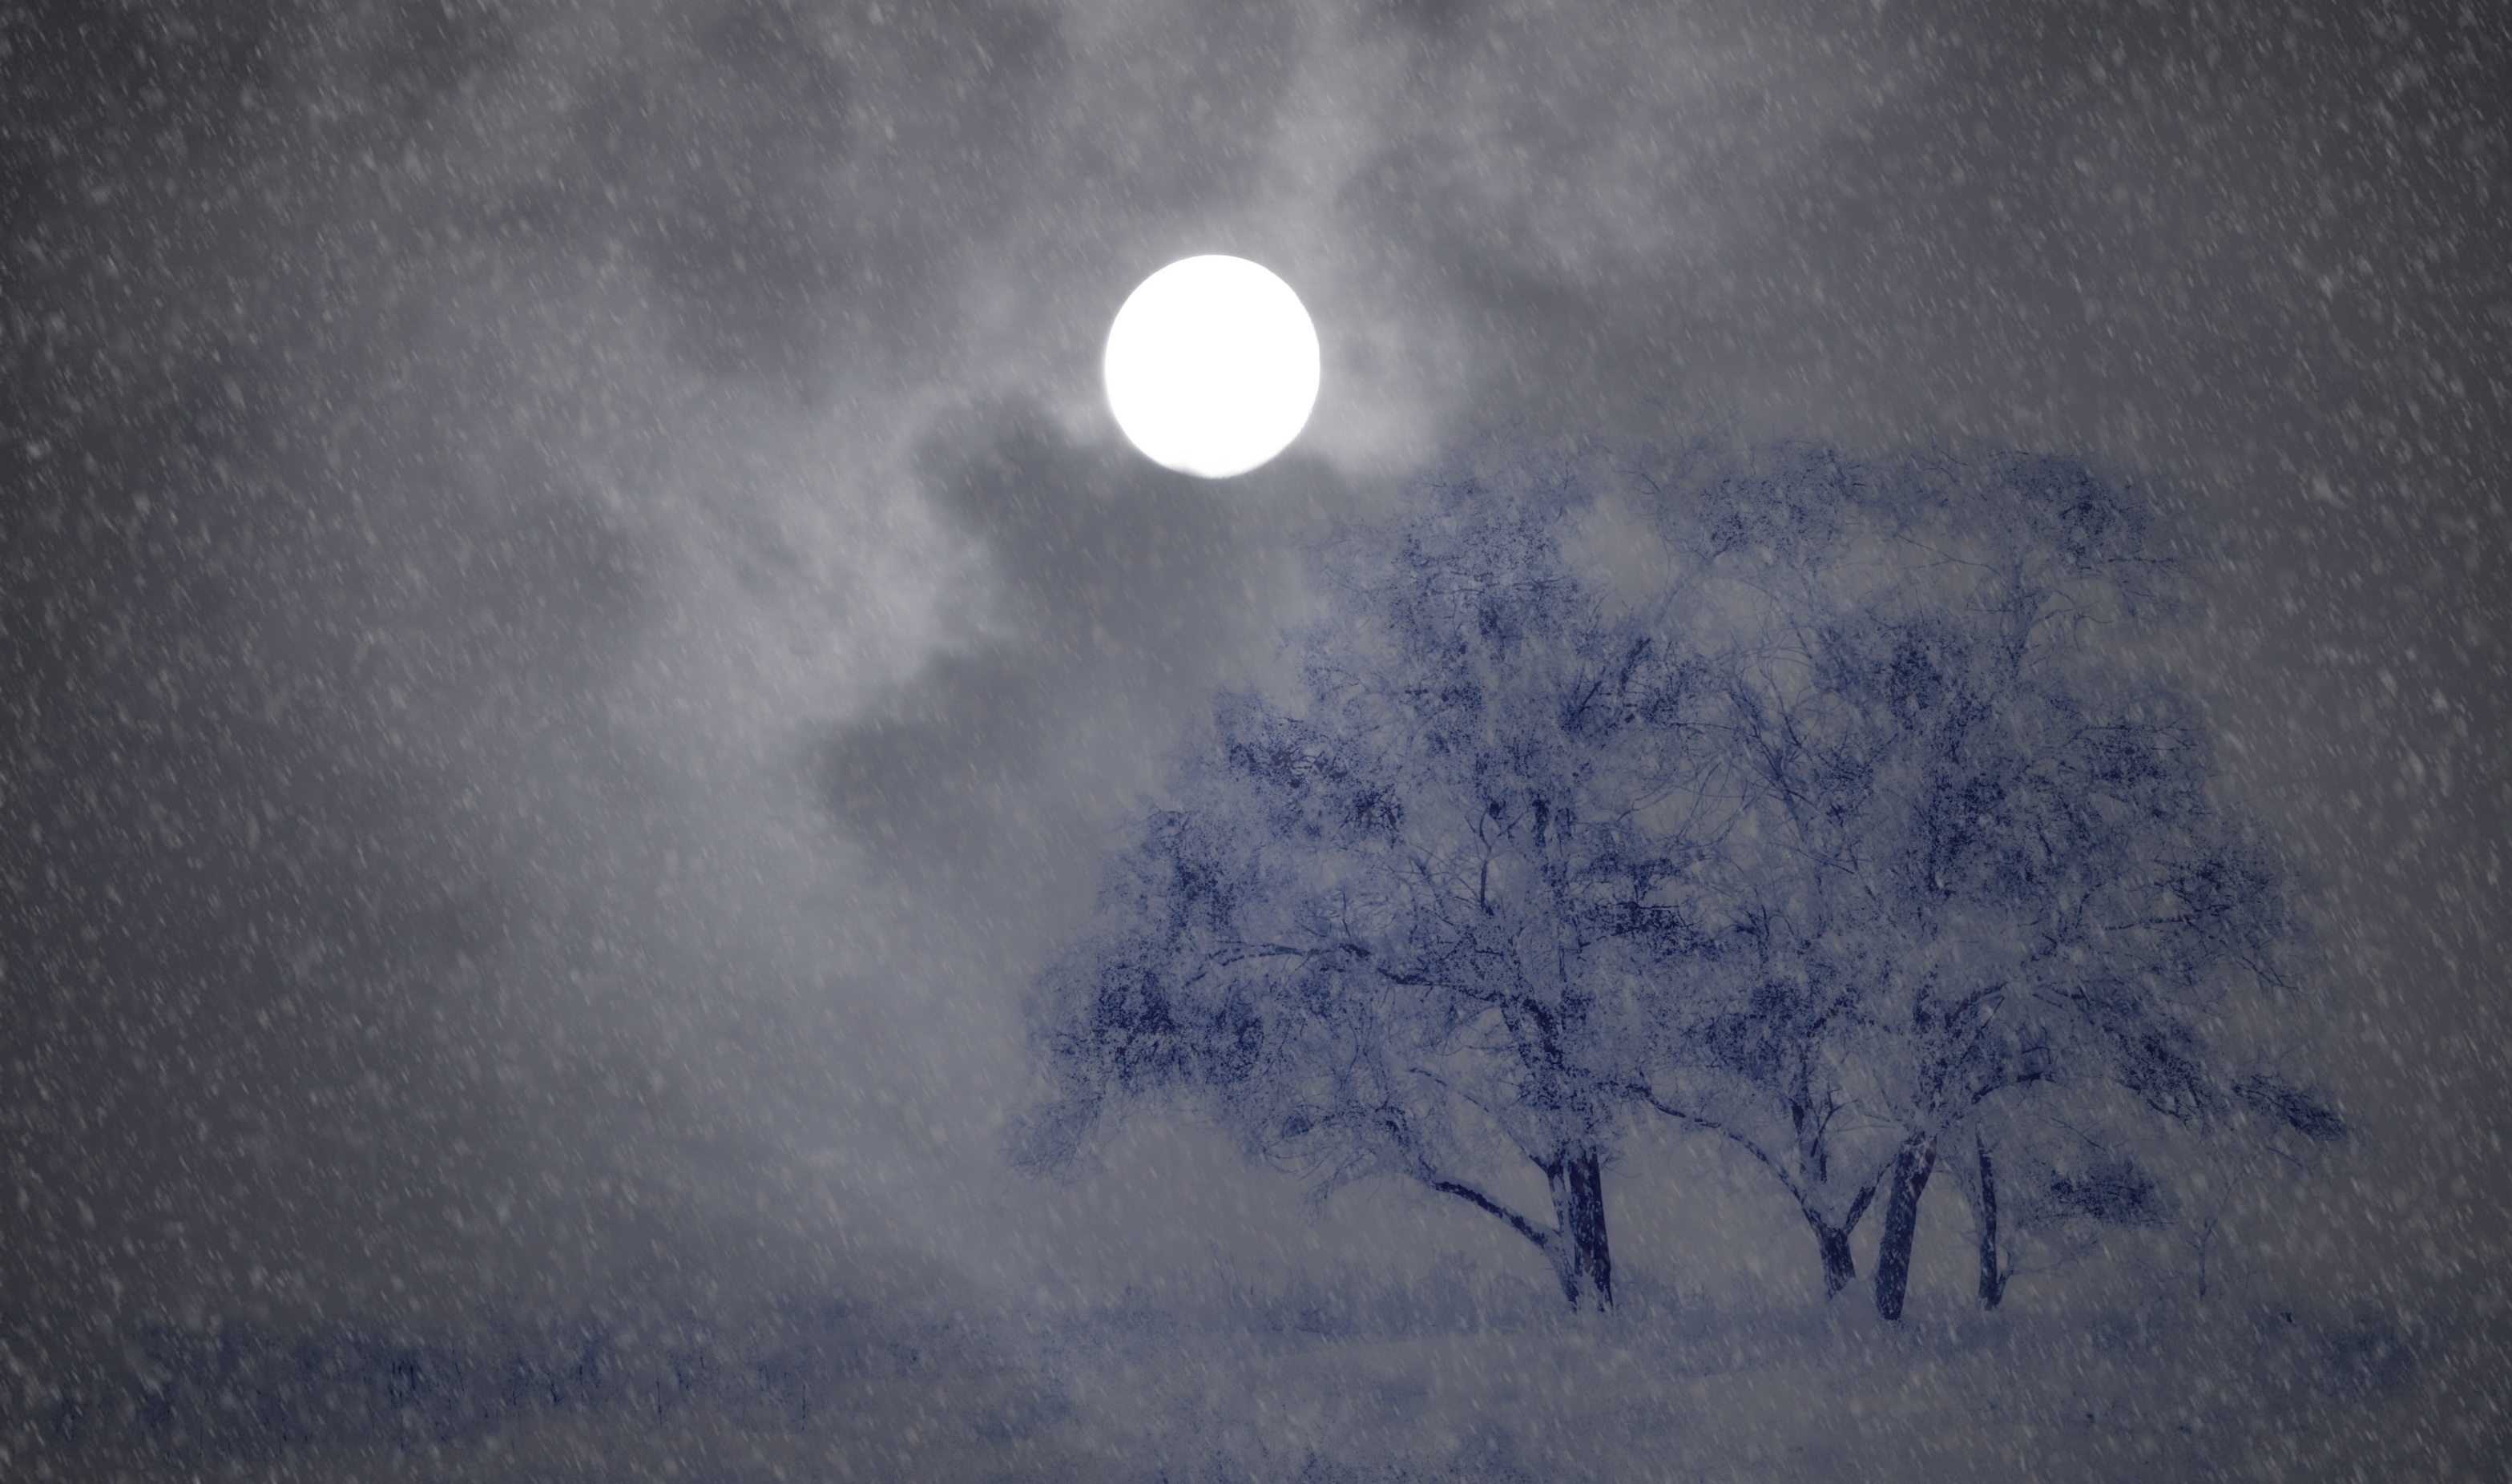 Луна песни снег